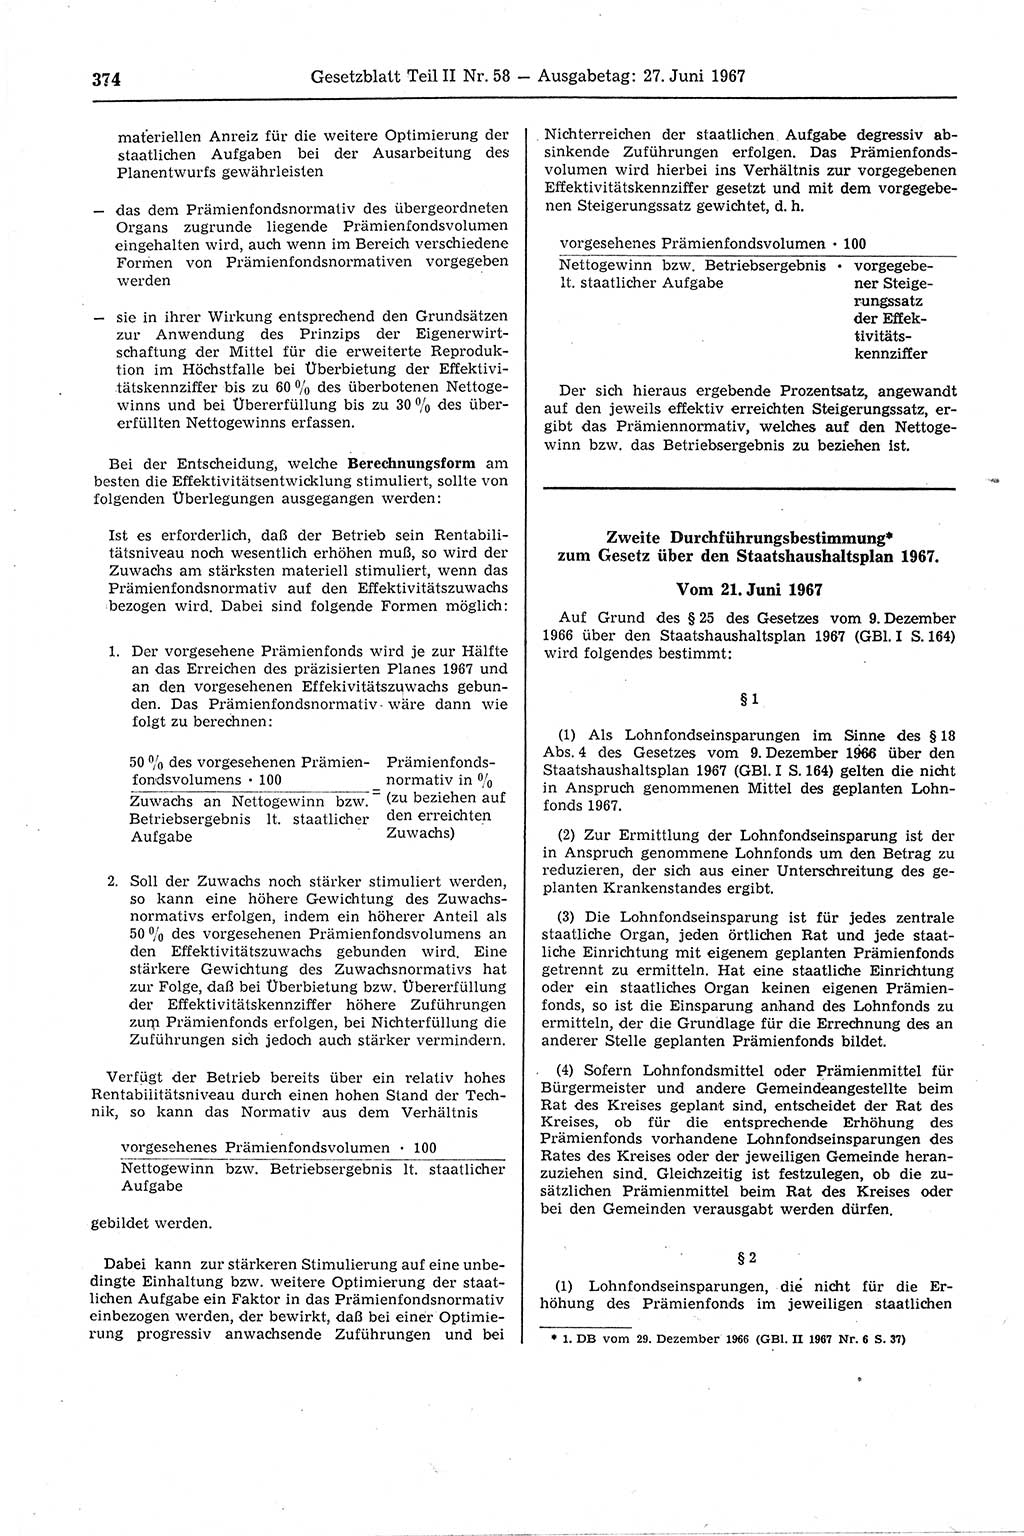 Gesetzblatt (GBl.) der Deutschen Demokratischen Republik (DDR) Teil ⅠⅠ 1967, Seite 374 (GBl. DDR ⅠⅠ 1967, S. 374)